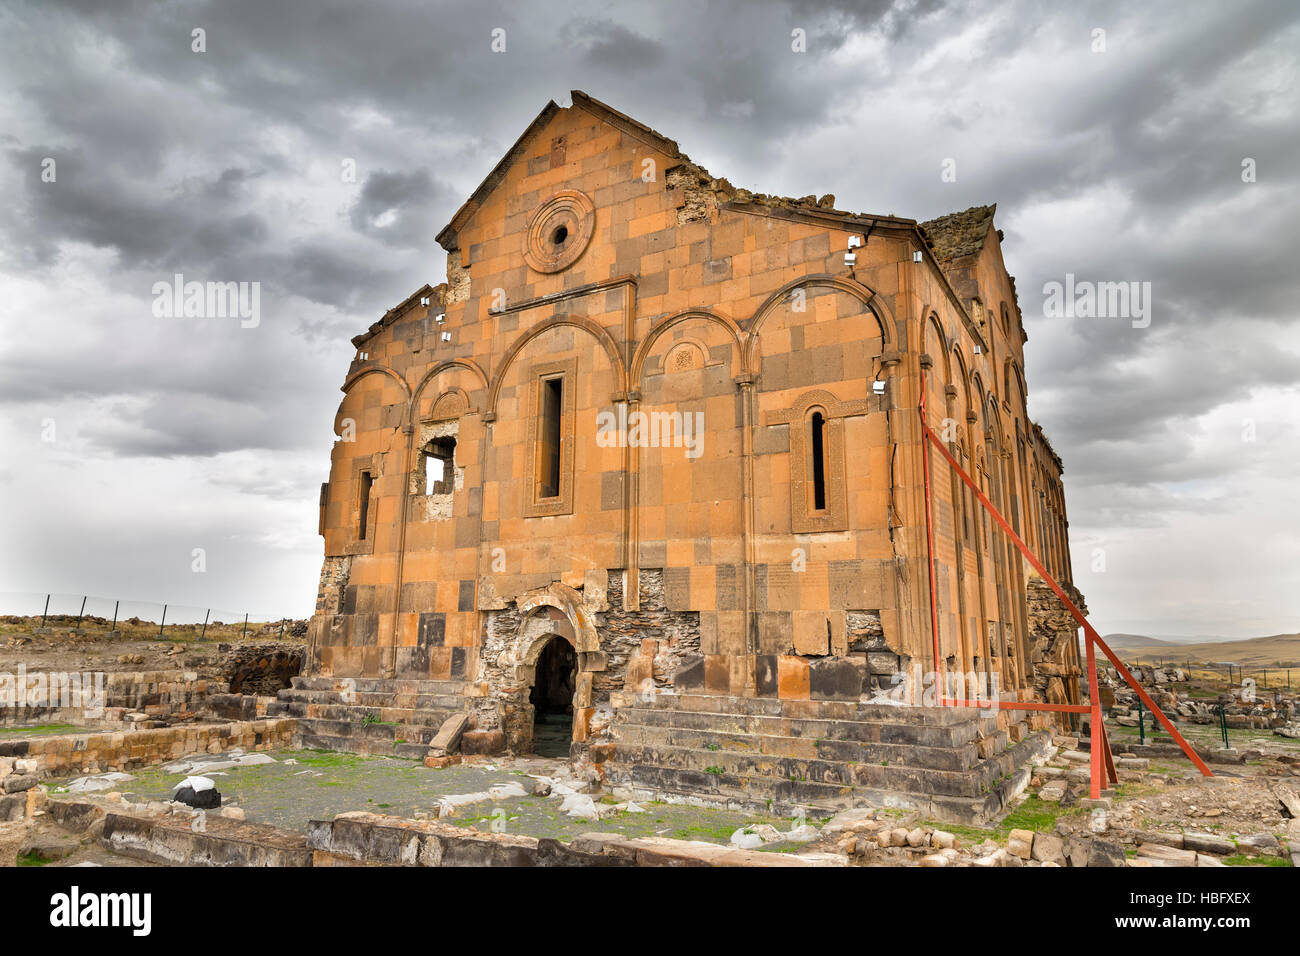 Vista exterior de la Catedral de Ani, la catedral armenia de Ani. Ani es una ciudad medieval armenio en ruinas situado en Kars Foto de stock